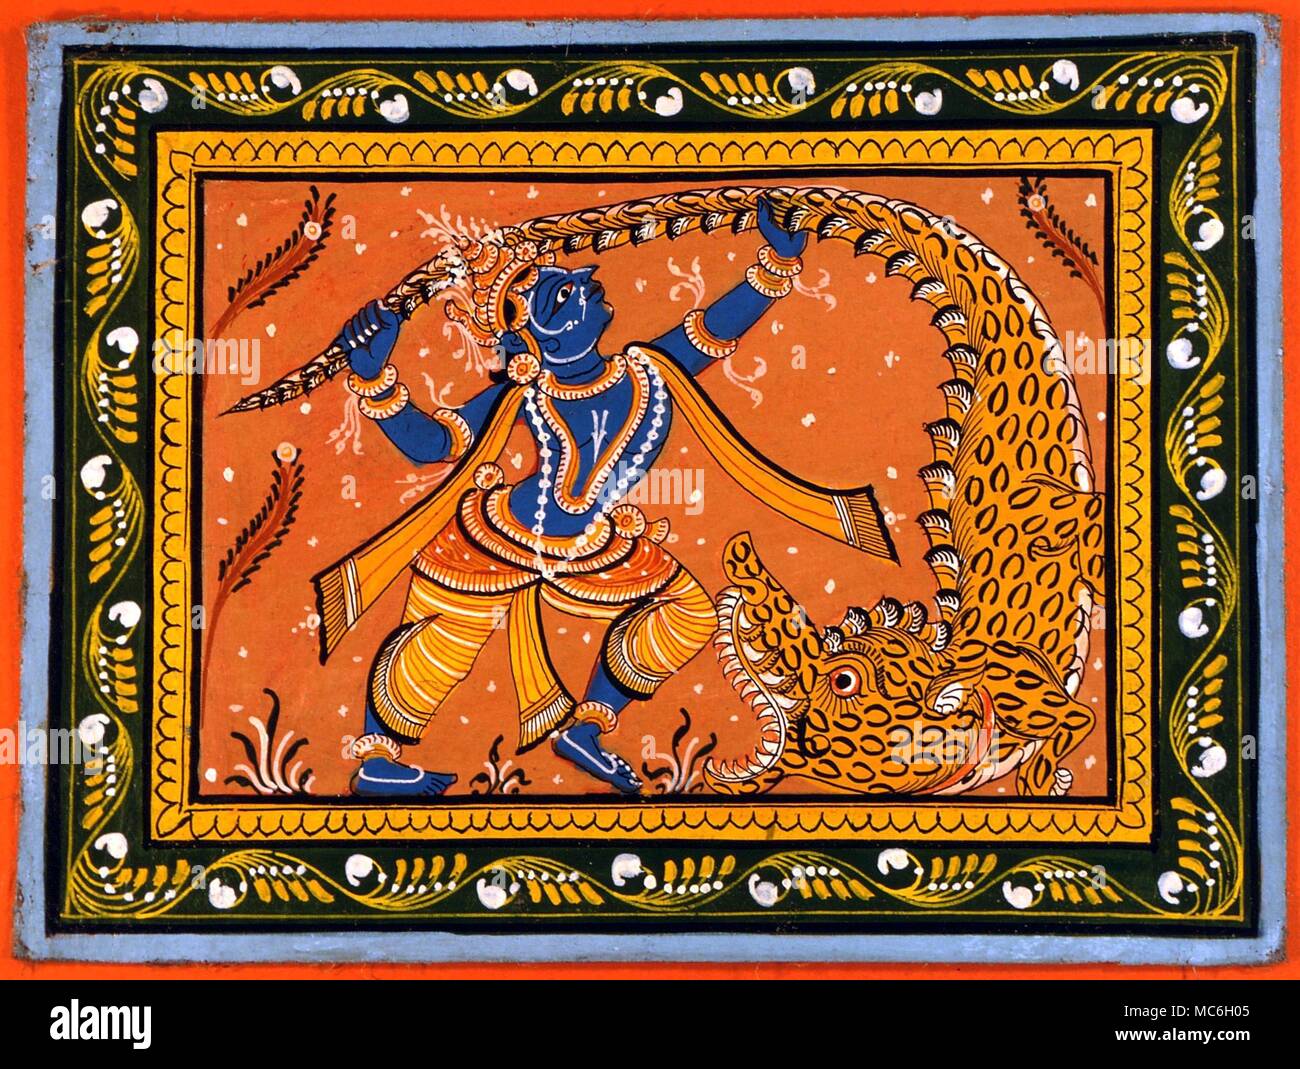 Monstres - MAKARA Le Makara (crocodile) monstre de la mythologie hindoue, attaqué par Krishna. La peinture indienne, de l'état d'Orissa. vers 1960 Banque D'Images